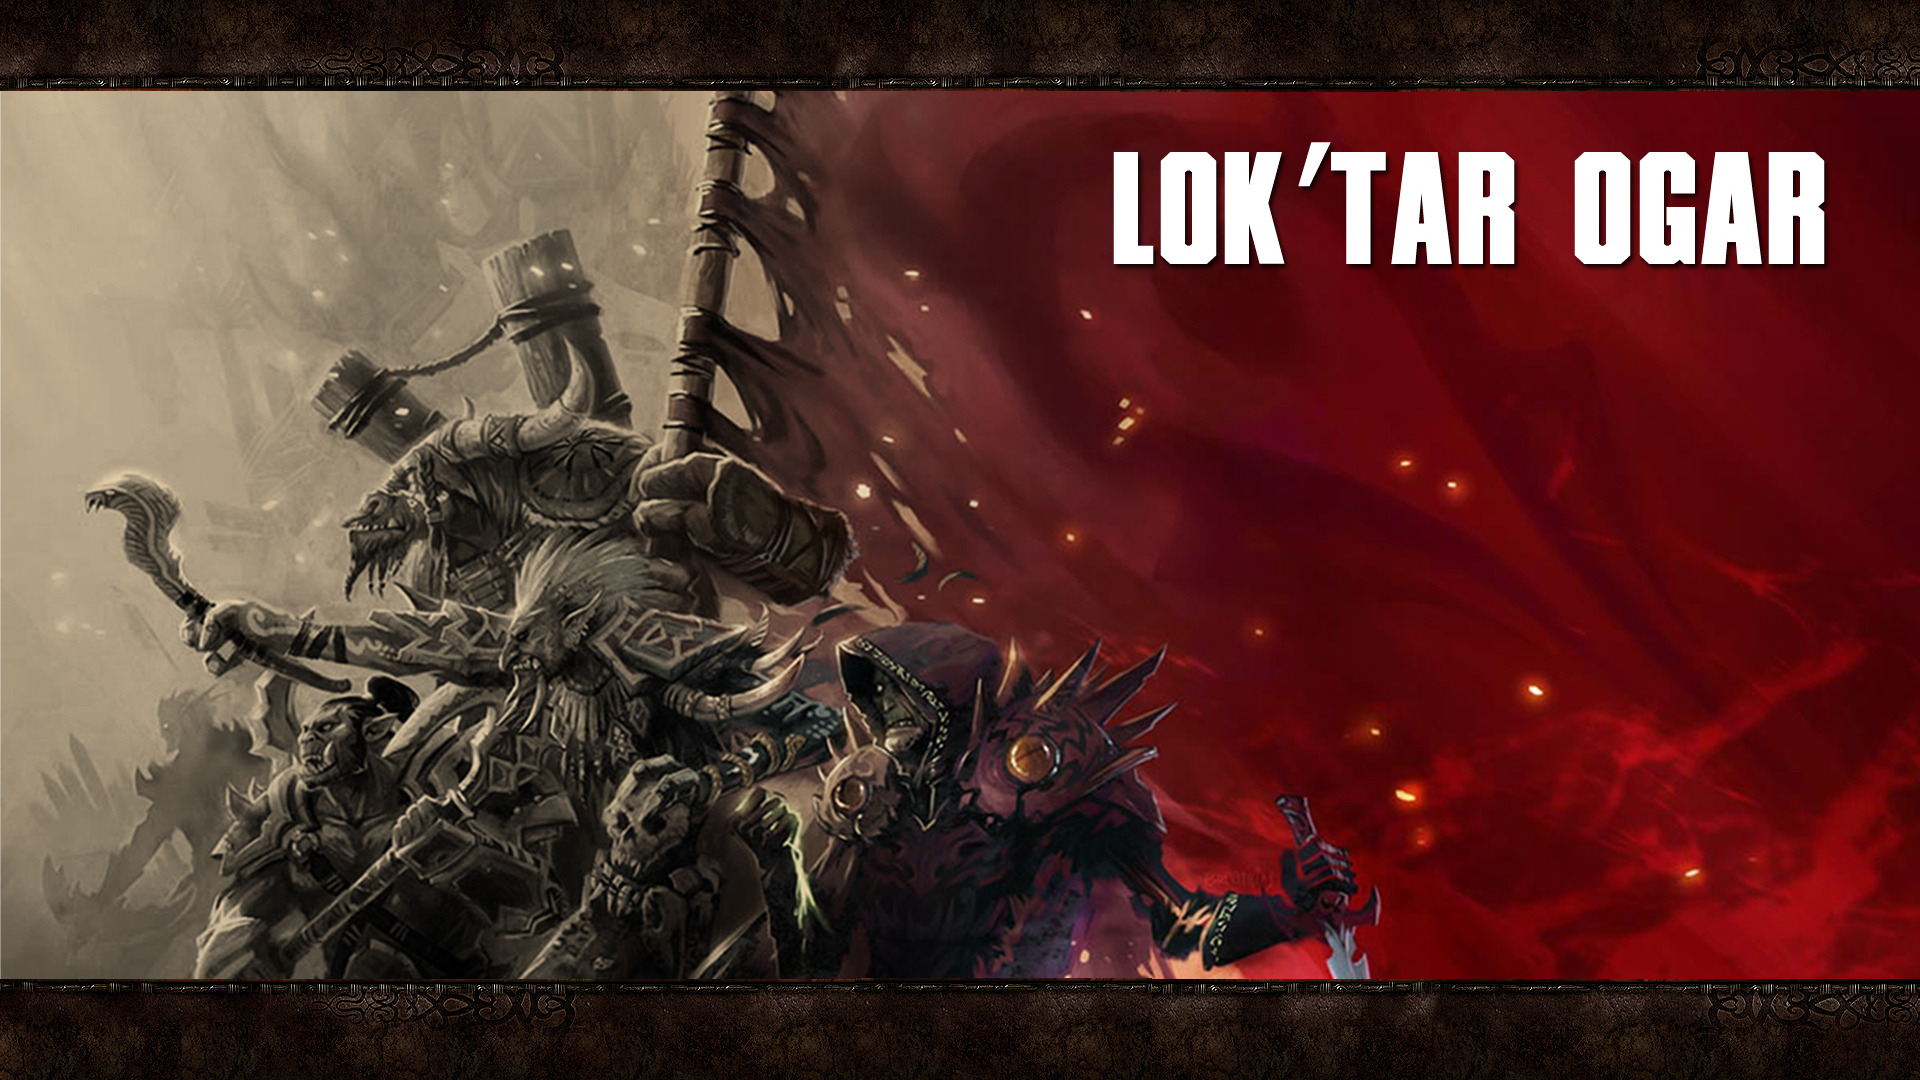 World Of Warcraft Hd Wallpaper - Lok Tar Ogar Wow , HD Wallpaper & Backgrounds